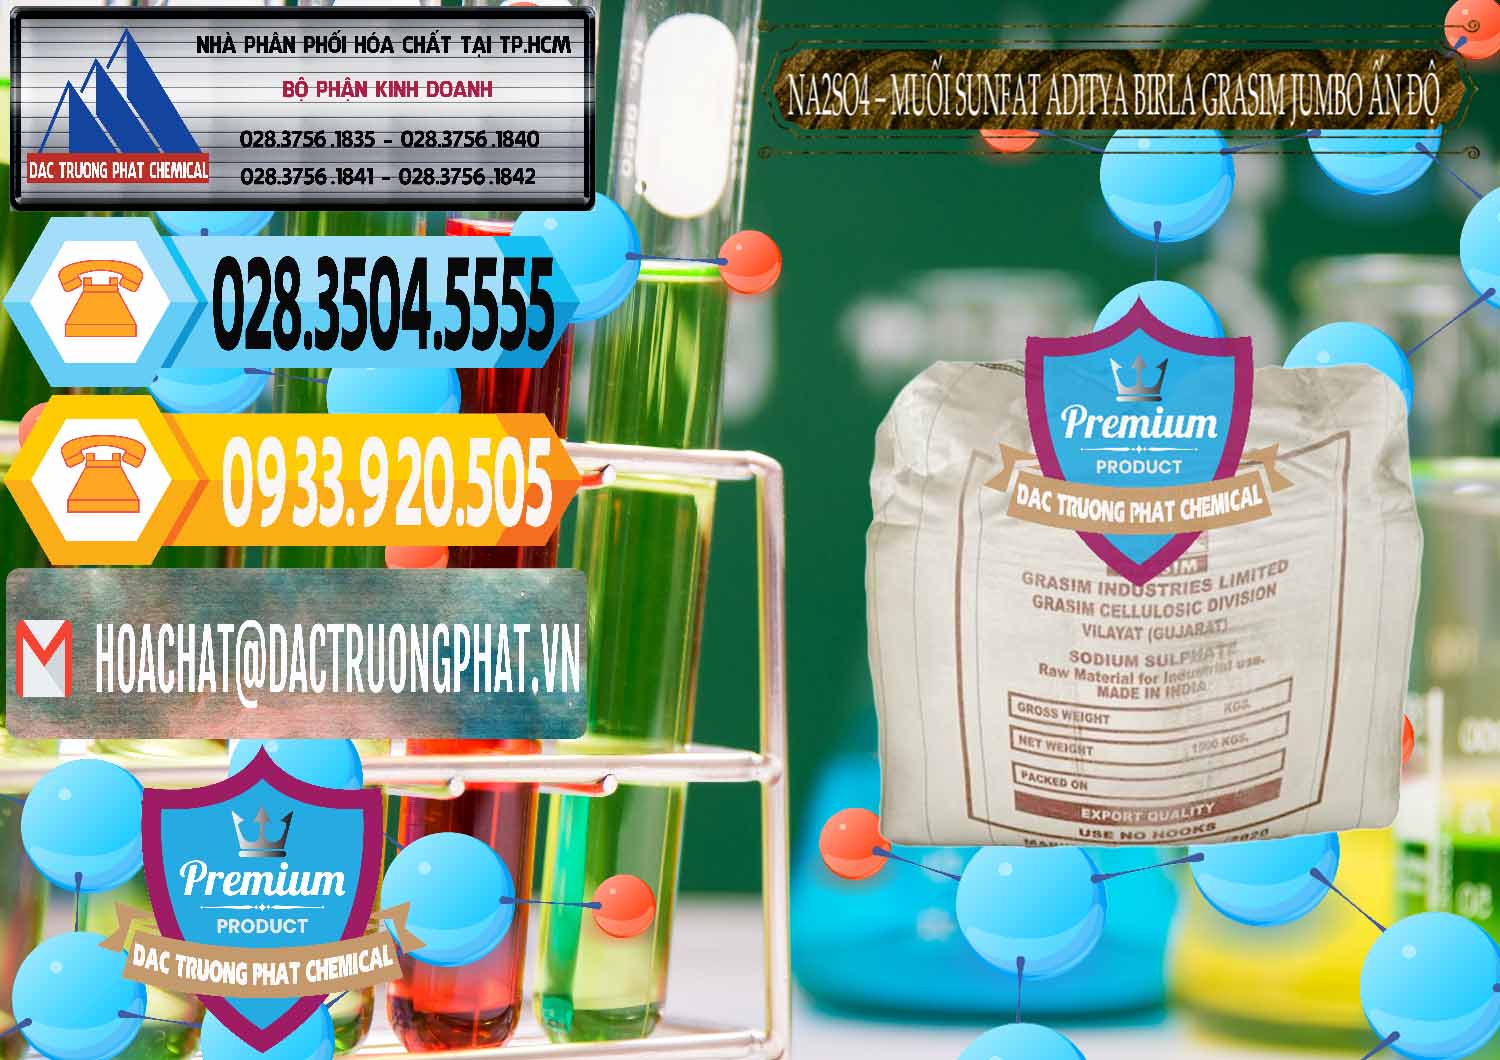 Đơn vị chuyên bán ( phân phối ) Sodium Sulphate - Muối Sunfat Na2SO4 Jumbo Bành Aditya Birla Grasim Ấn Độ India - 0357 - Chuyên kinh doanh - phân phối hóa chất tại TP.HCM - hoachattayrua.net